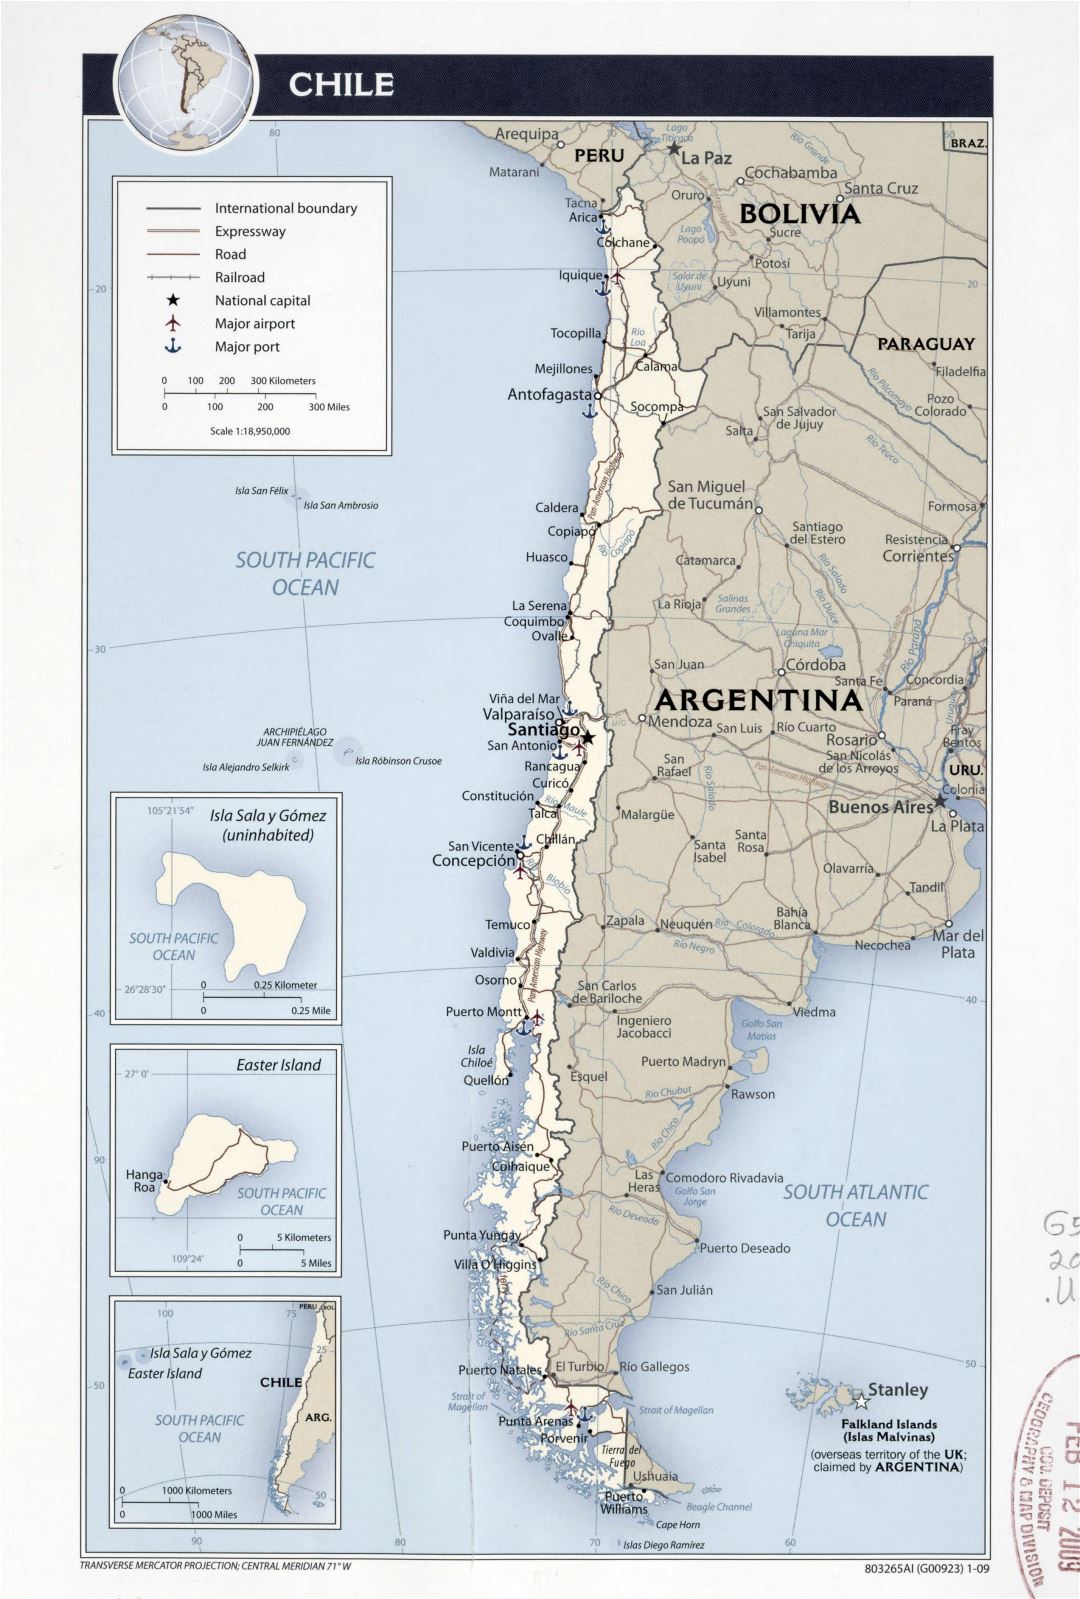 Большая детальная политическая карта Чили с дорогами, автомагистралями, железными дорогами, крупными городами, морскими портами и аэропортами - 2009